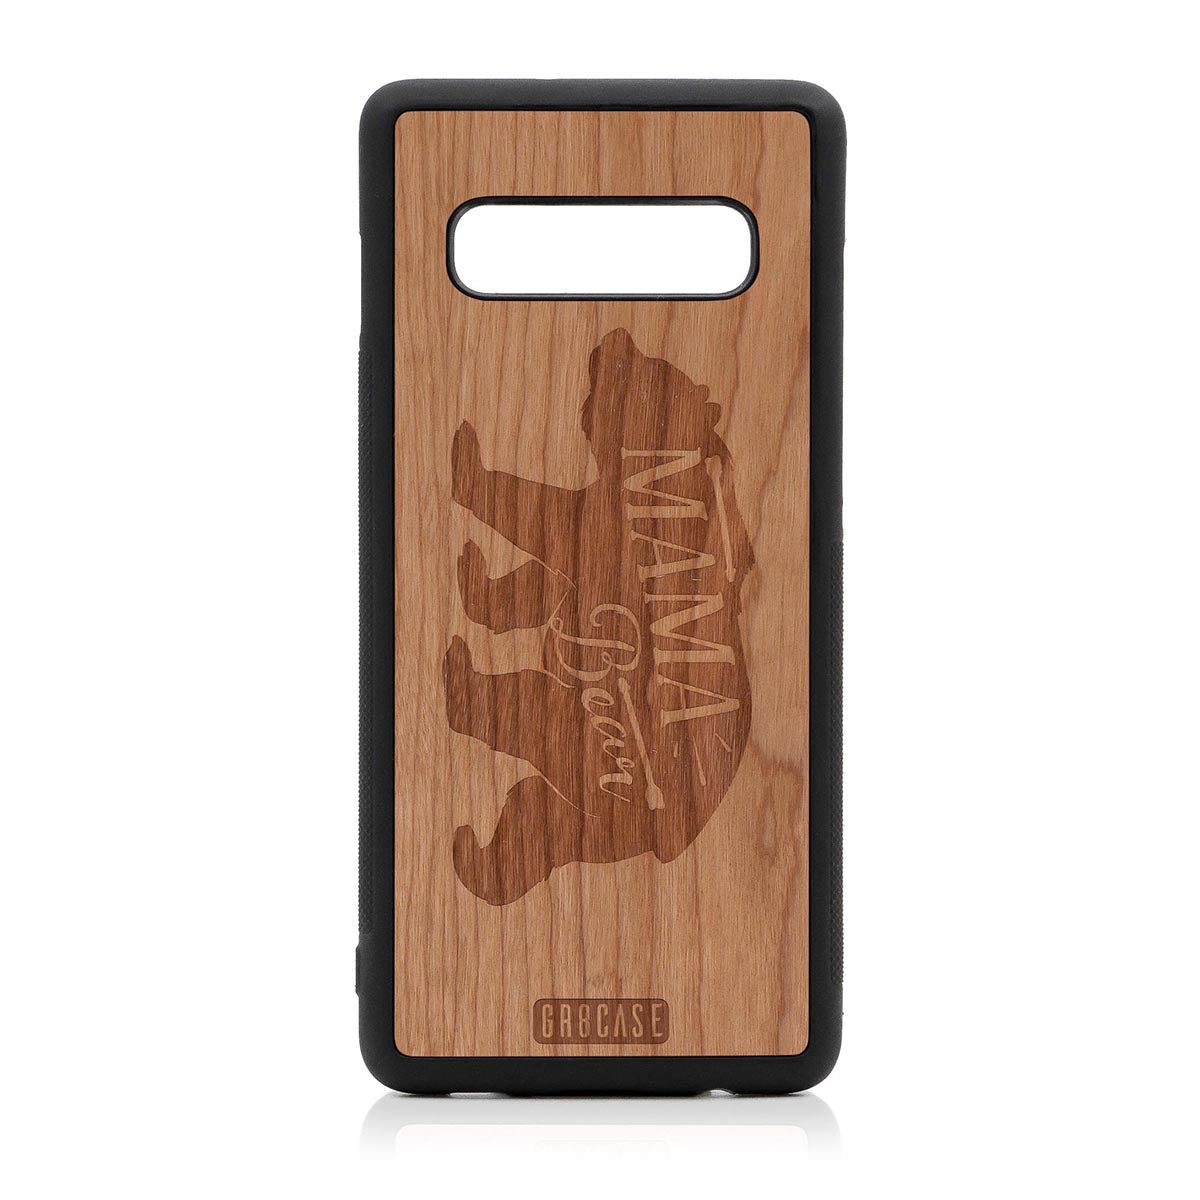 Mama Bear Design Wood Case Samsung Galaxy S10 Plus by GR8CASE